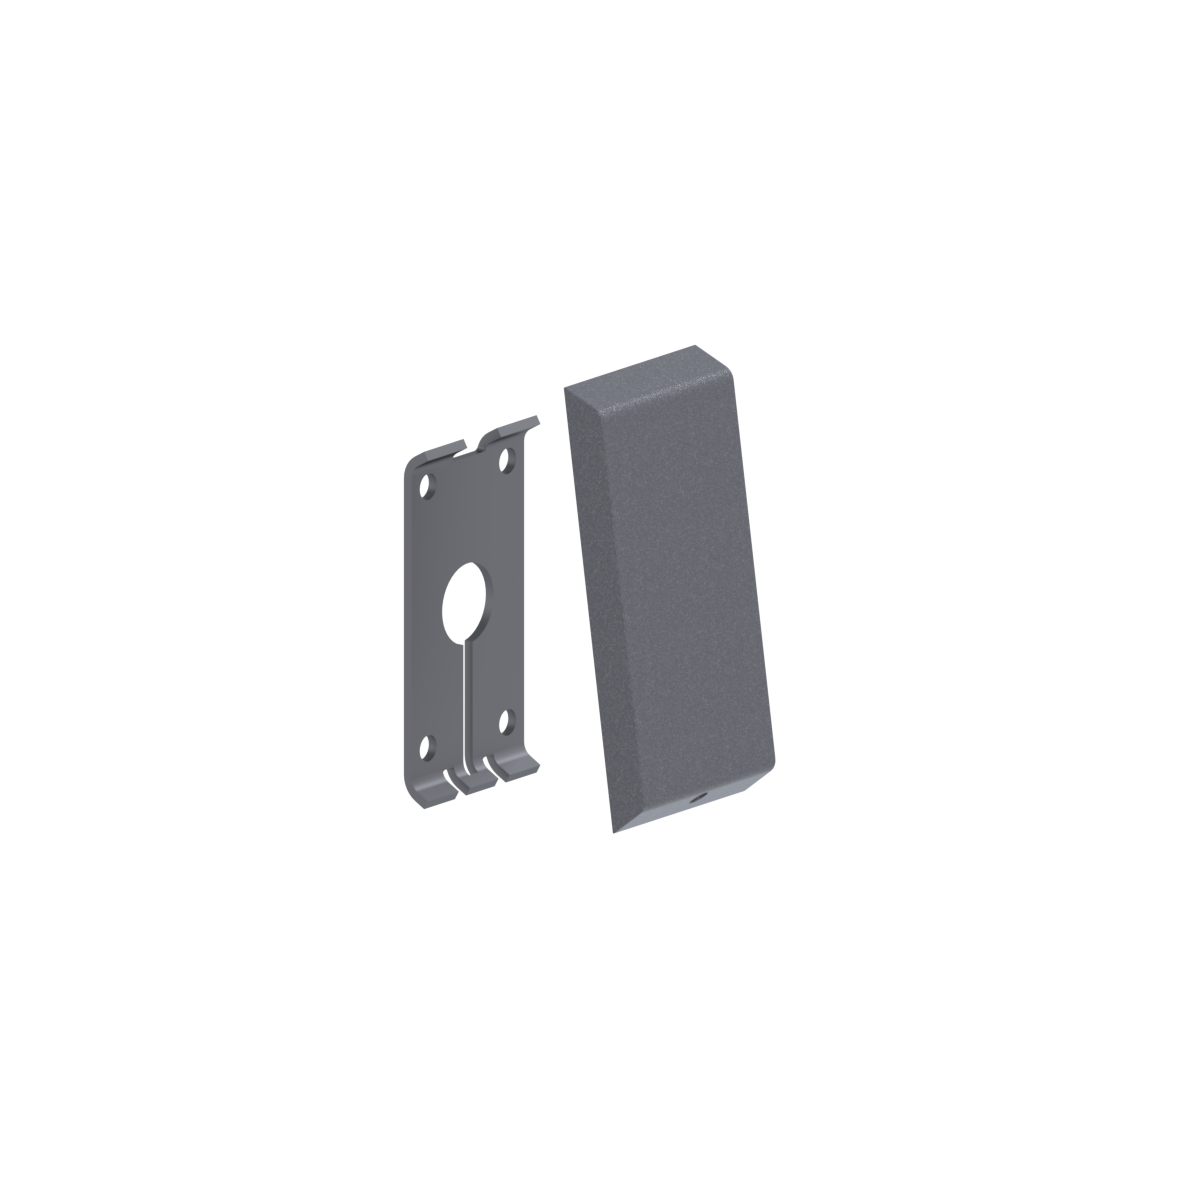 Cavere Care Grundplatte vario, mit Blindabdeckung, für Stützklappgriffe mit E-Taster, Anschluss verdeckt mit Montageplatte, 100 x 22 x 220 mm, Cavere Anthrazit-Metallic